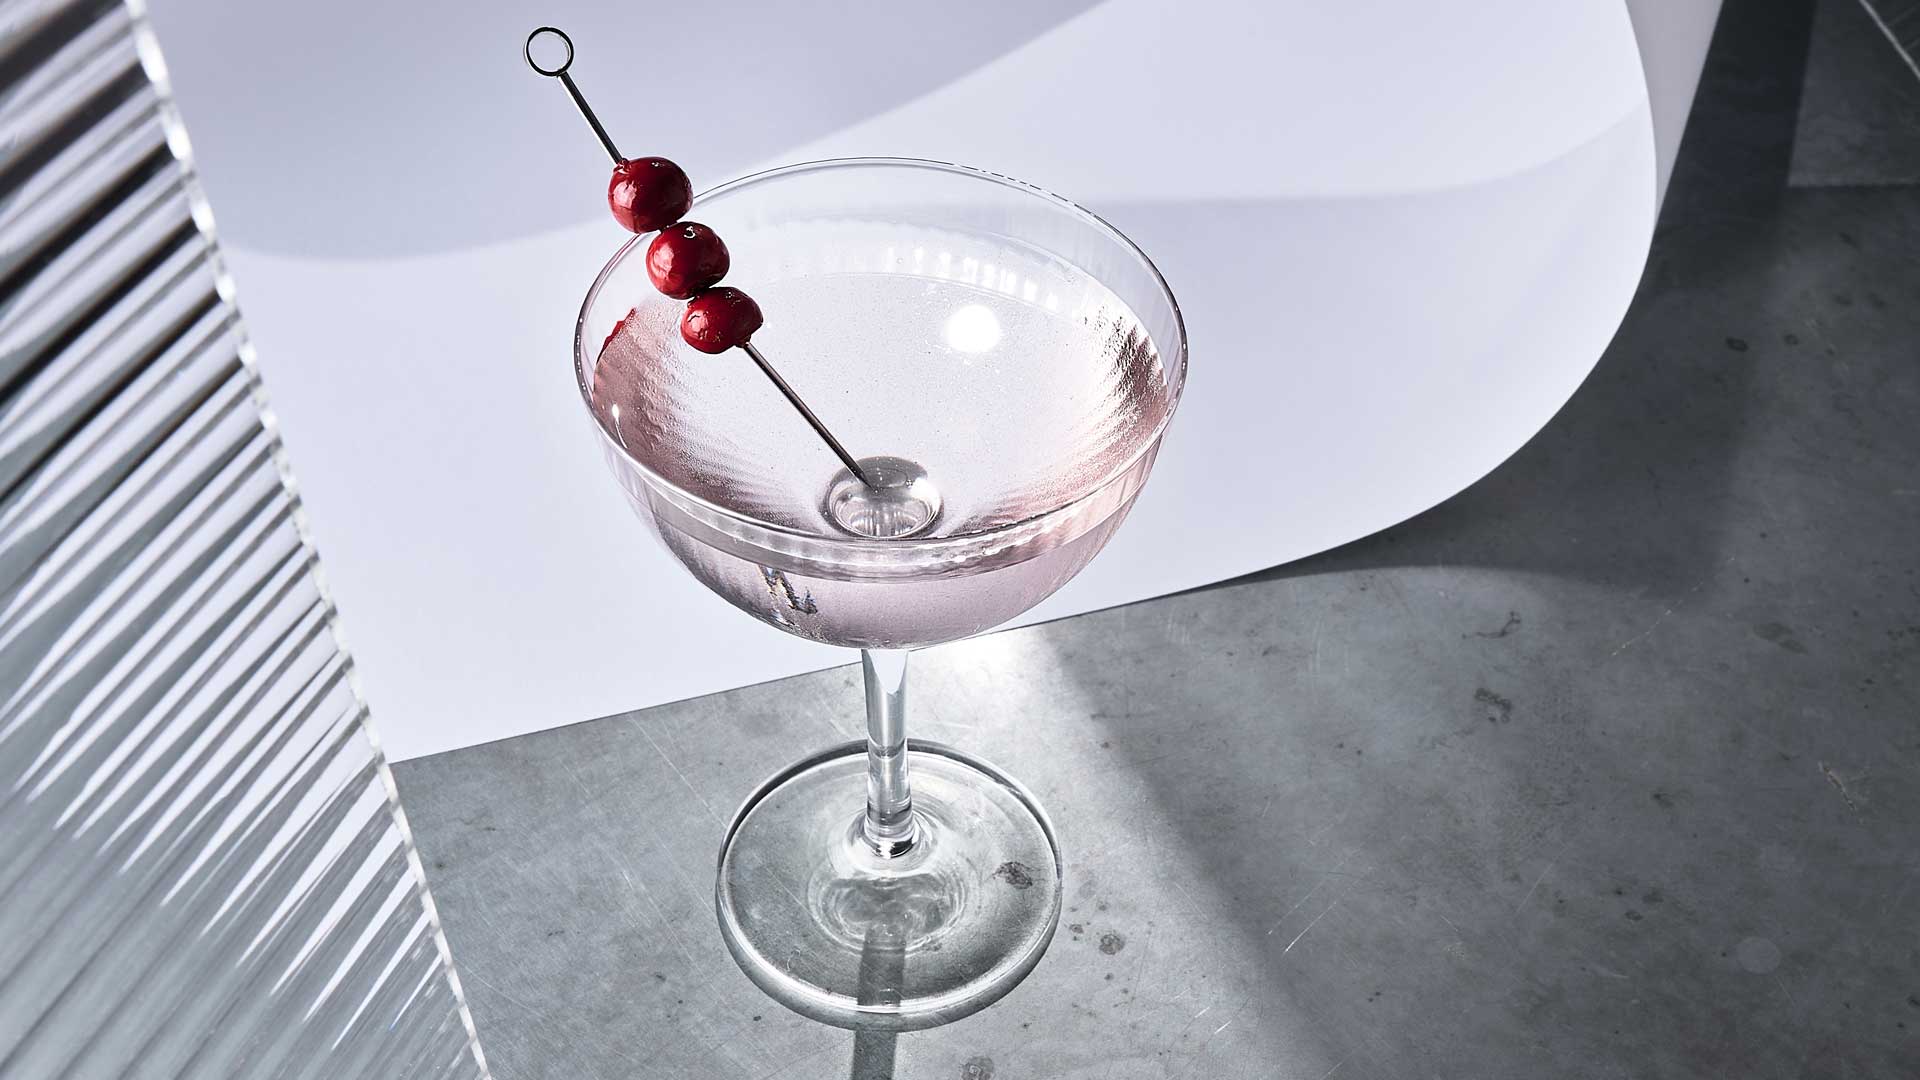 The-clarified-cosmo-belvedere-vodka-cocktail-di-san-valentino-coqtail-milano